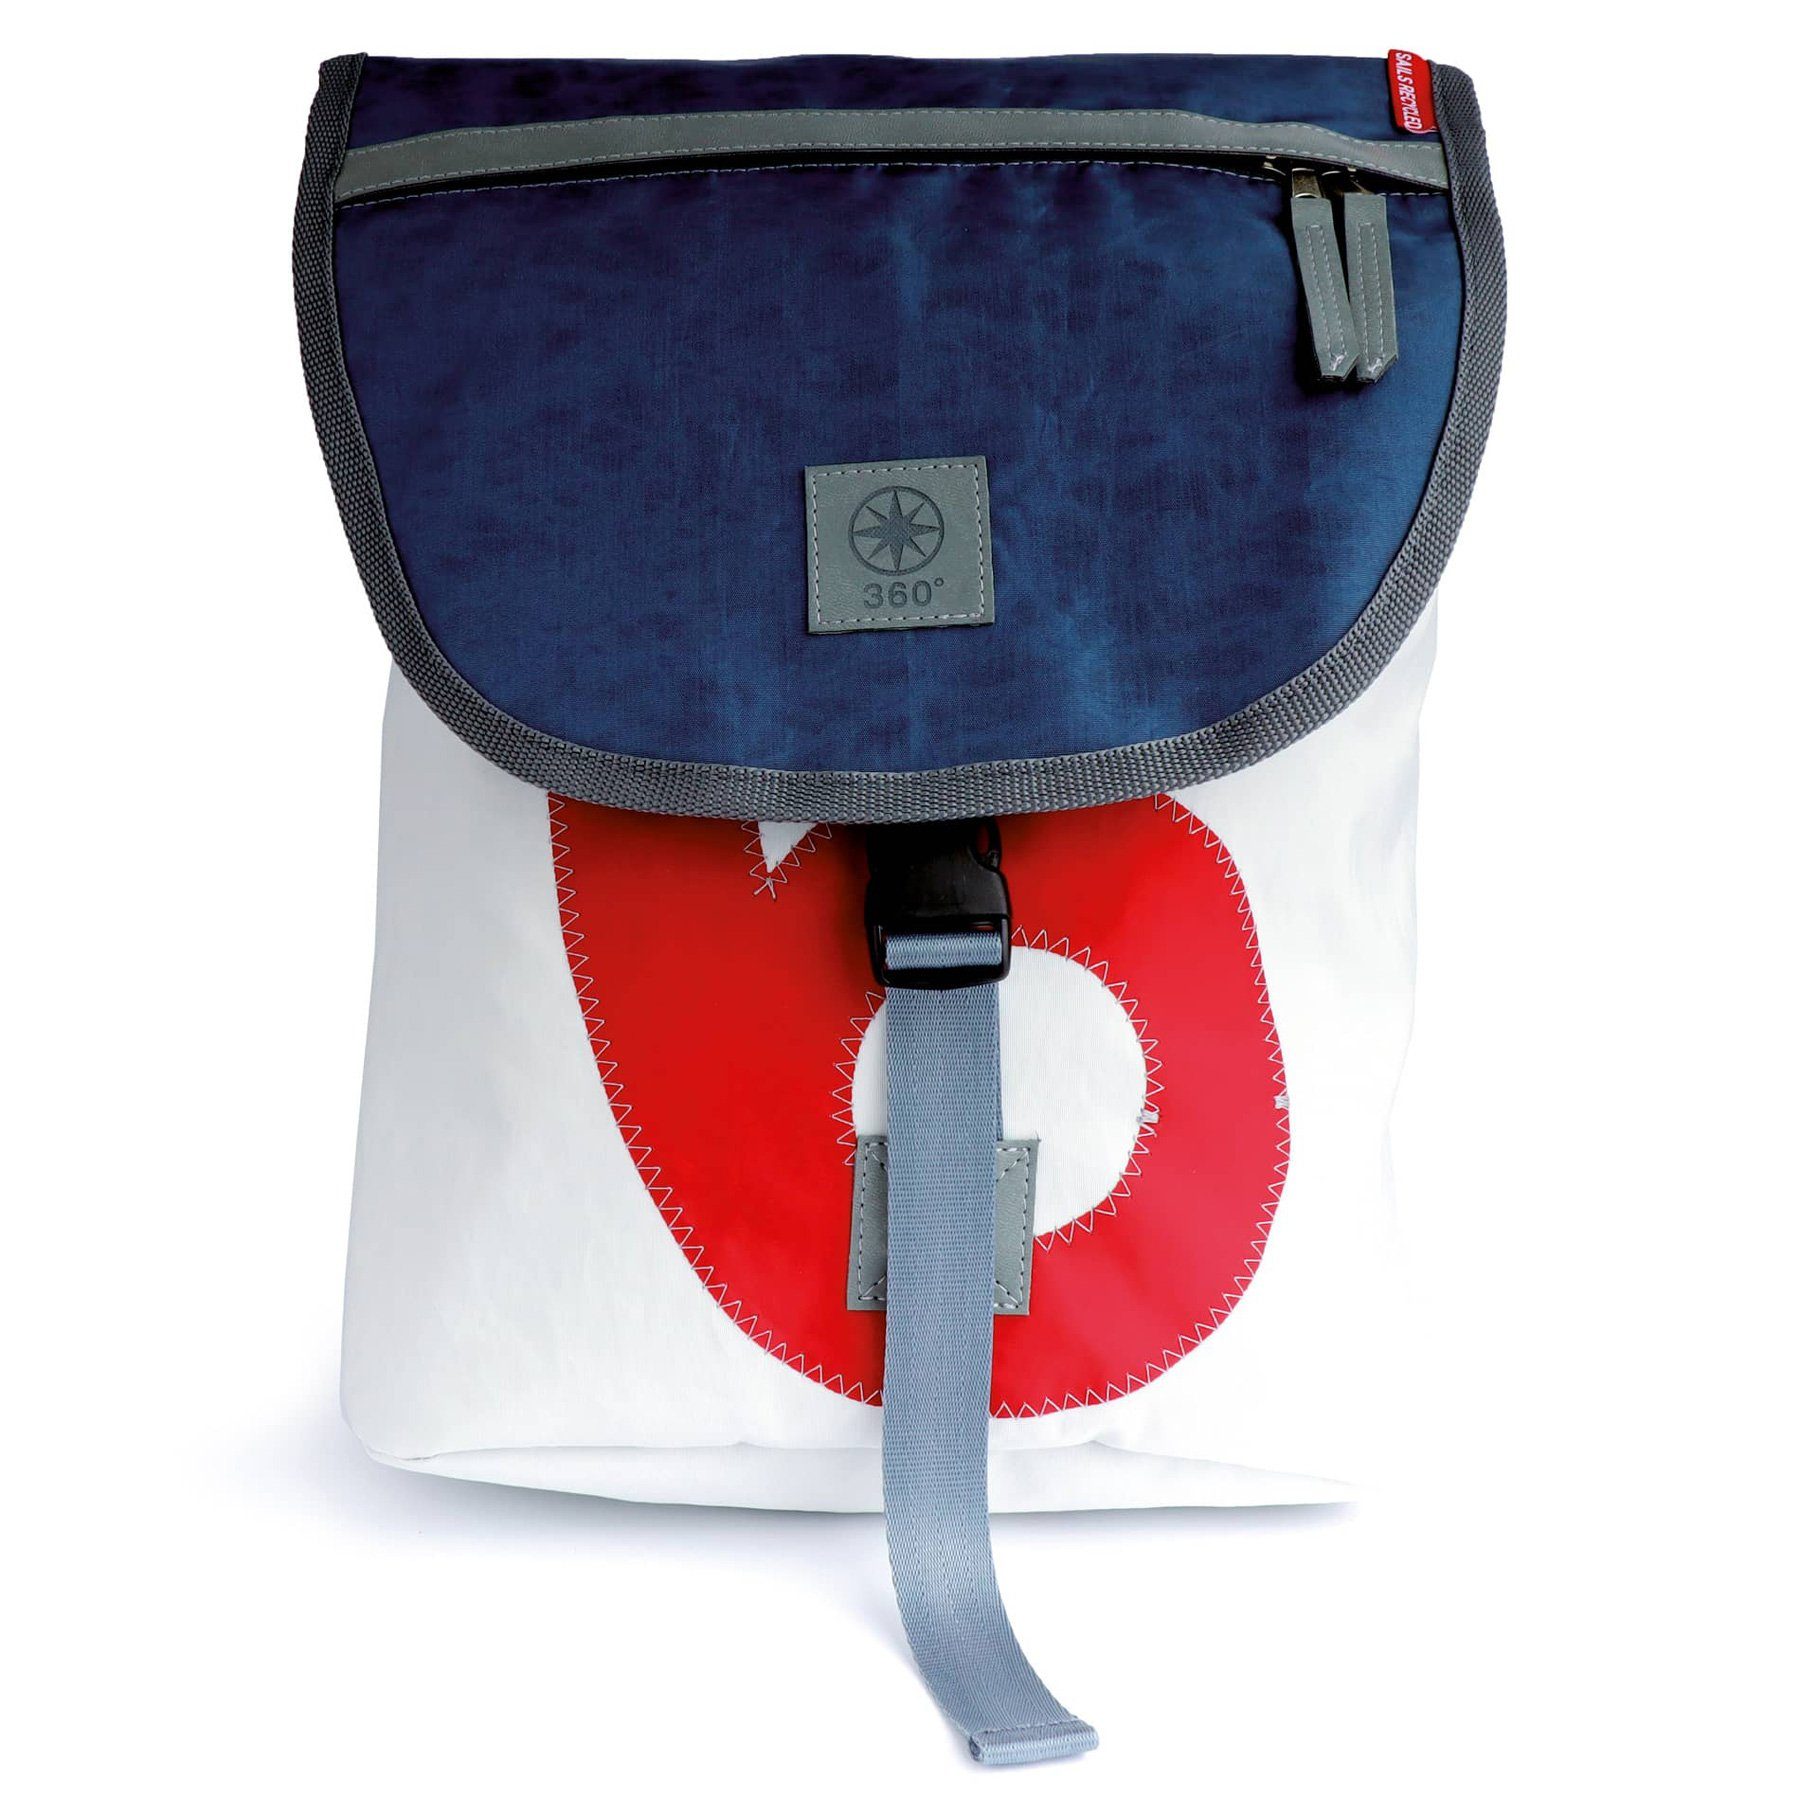 360Grad Freizeittasche »360 Grad kleiner Rucksack Landgang Mini aus  Segeltuch weiß – blau« online kaufen | OTTO